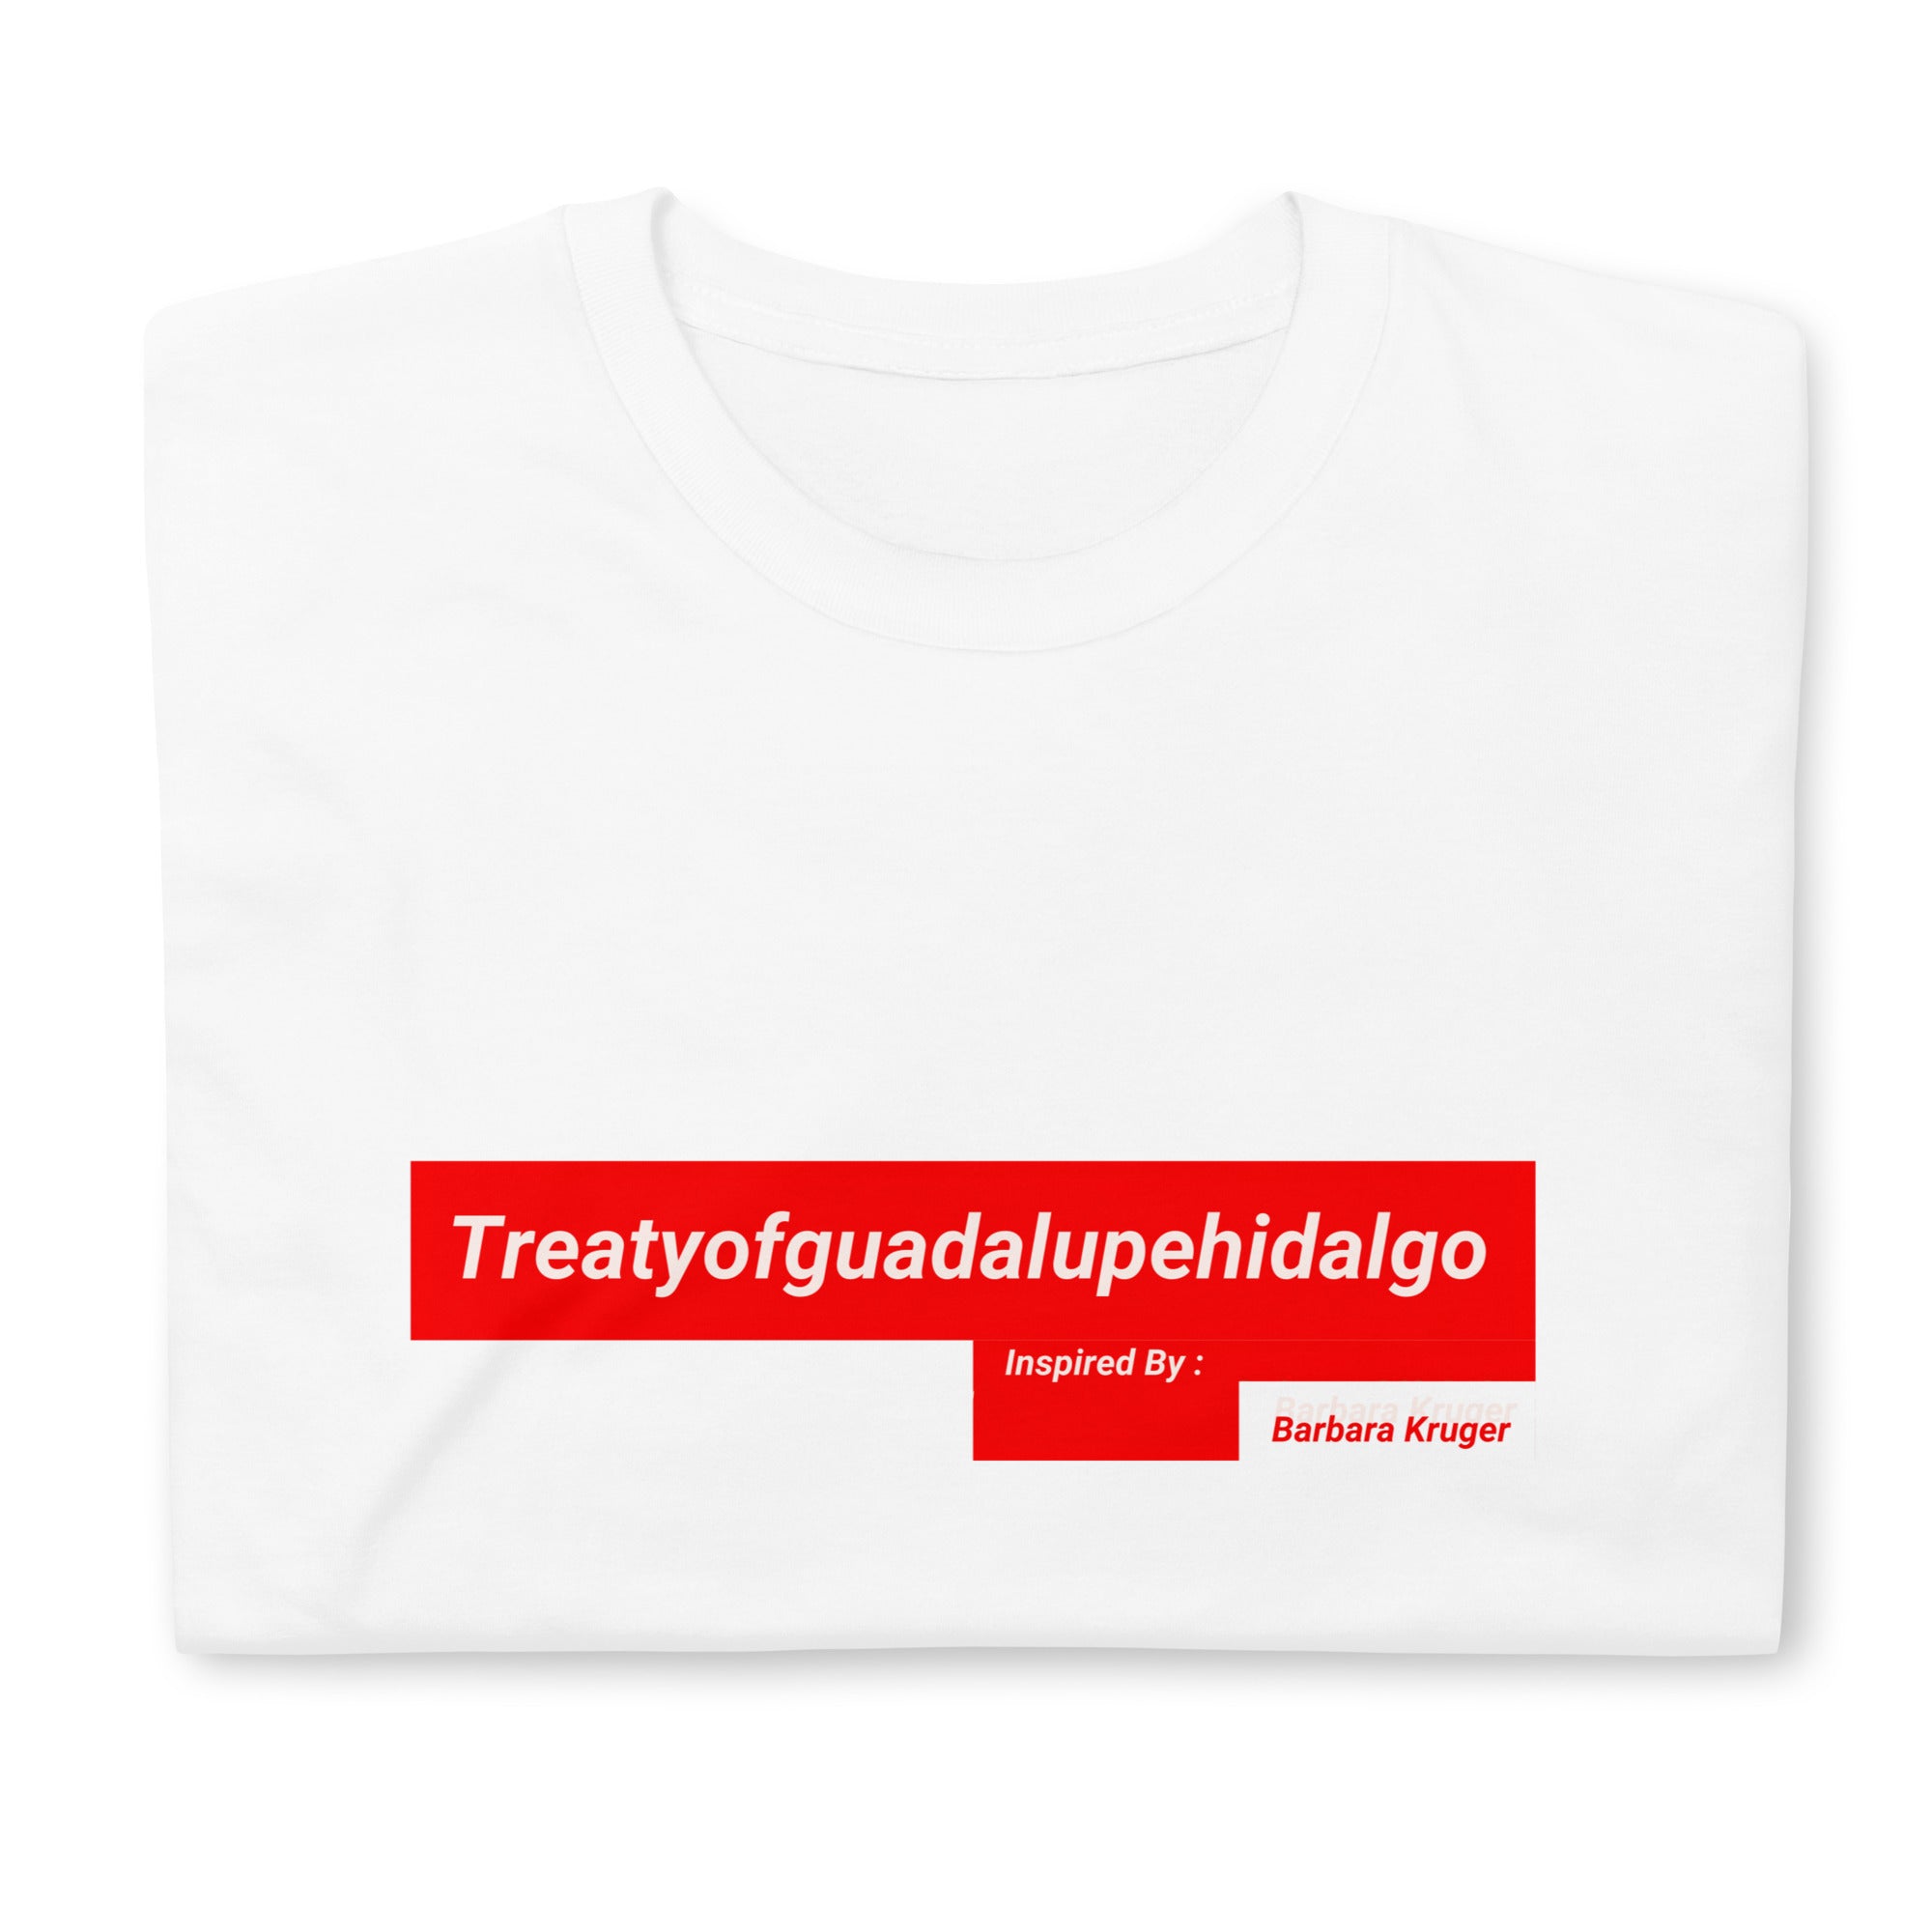 Treaty W.I.S.T. T-Shirt